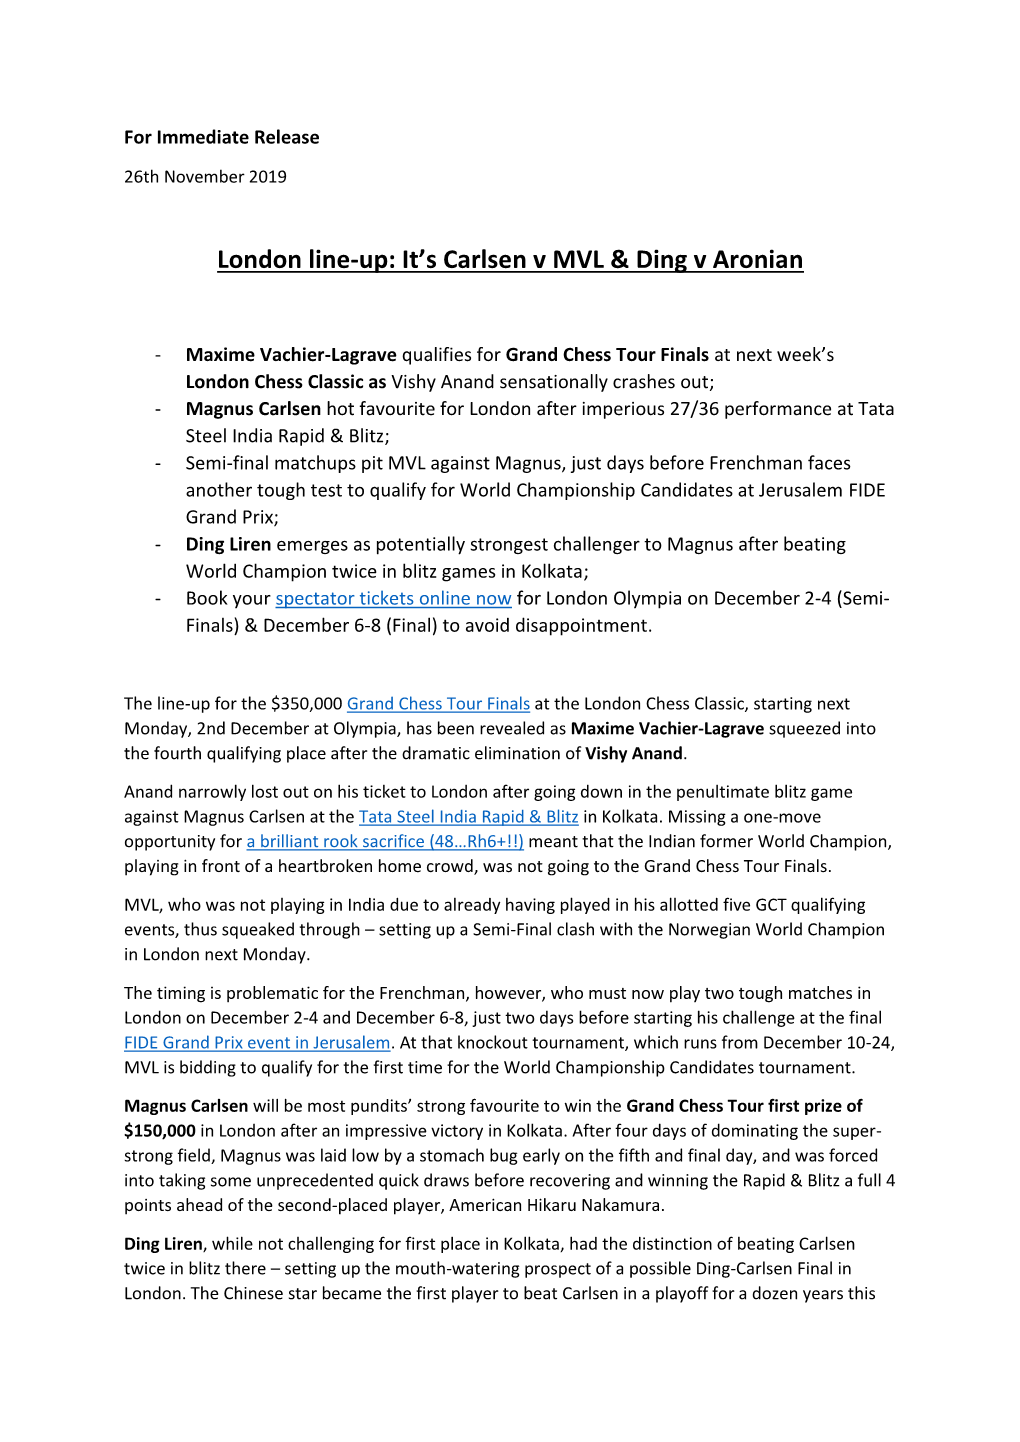 London Line-Up: It's Carlsen V MVL & Ding V Aronian